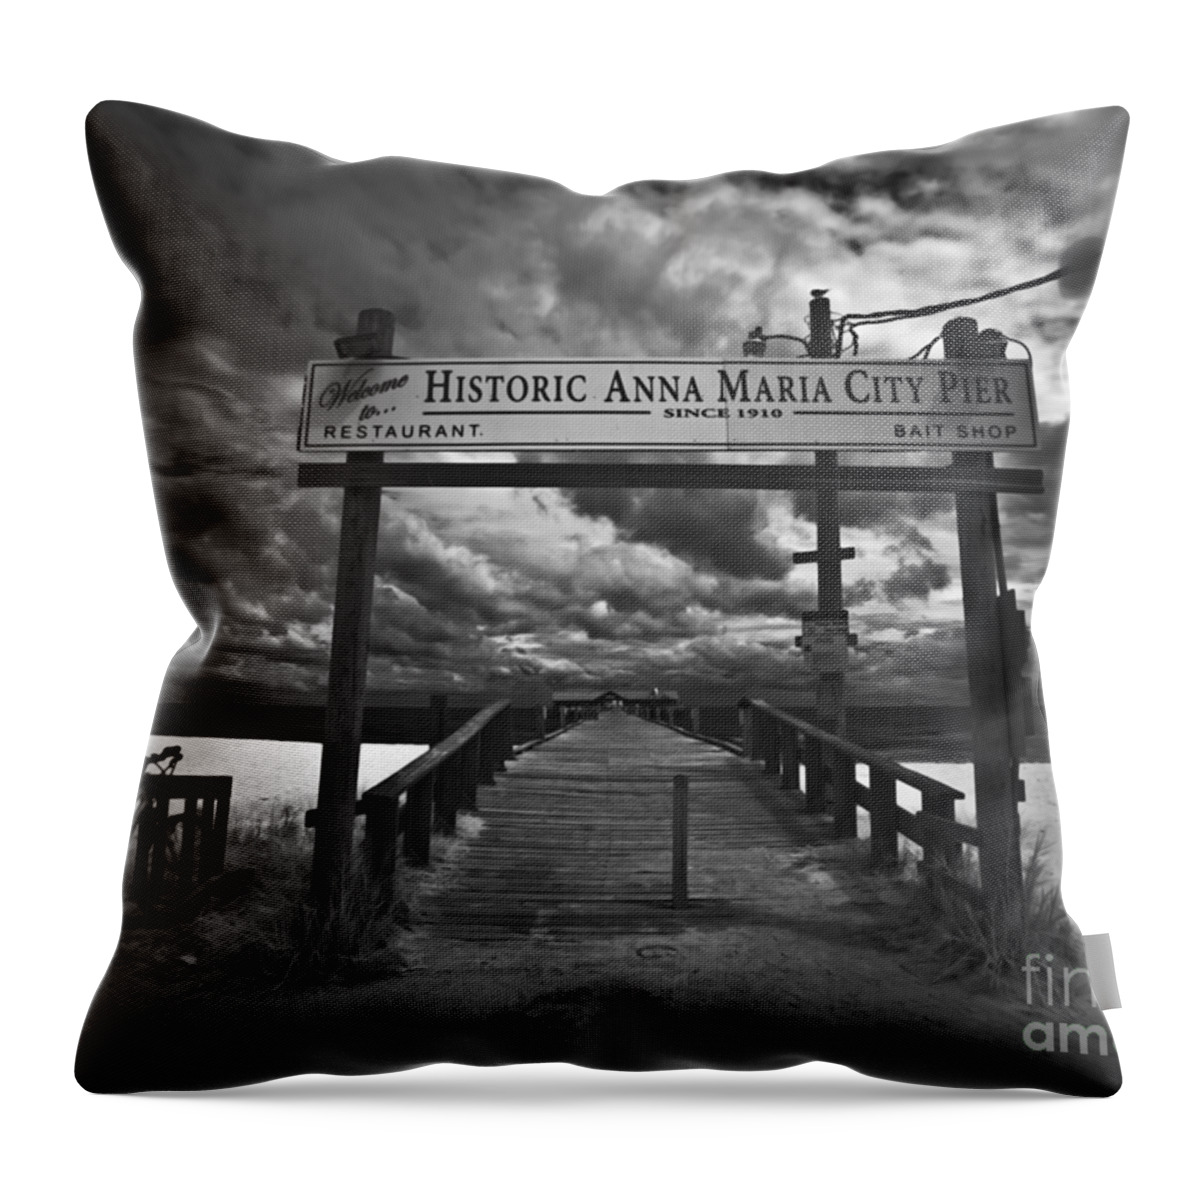 Historic Anna Maria City Pier Throw Pillow featuring the photograph Historic Anna Maria City Pier 9177436 by Rolf Bertram